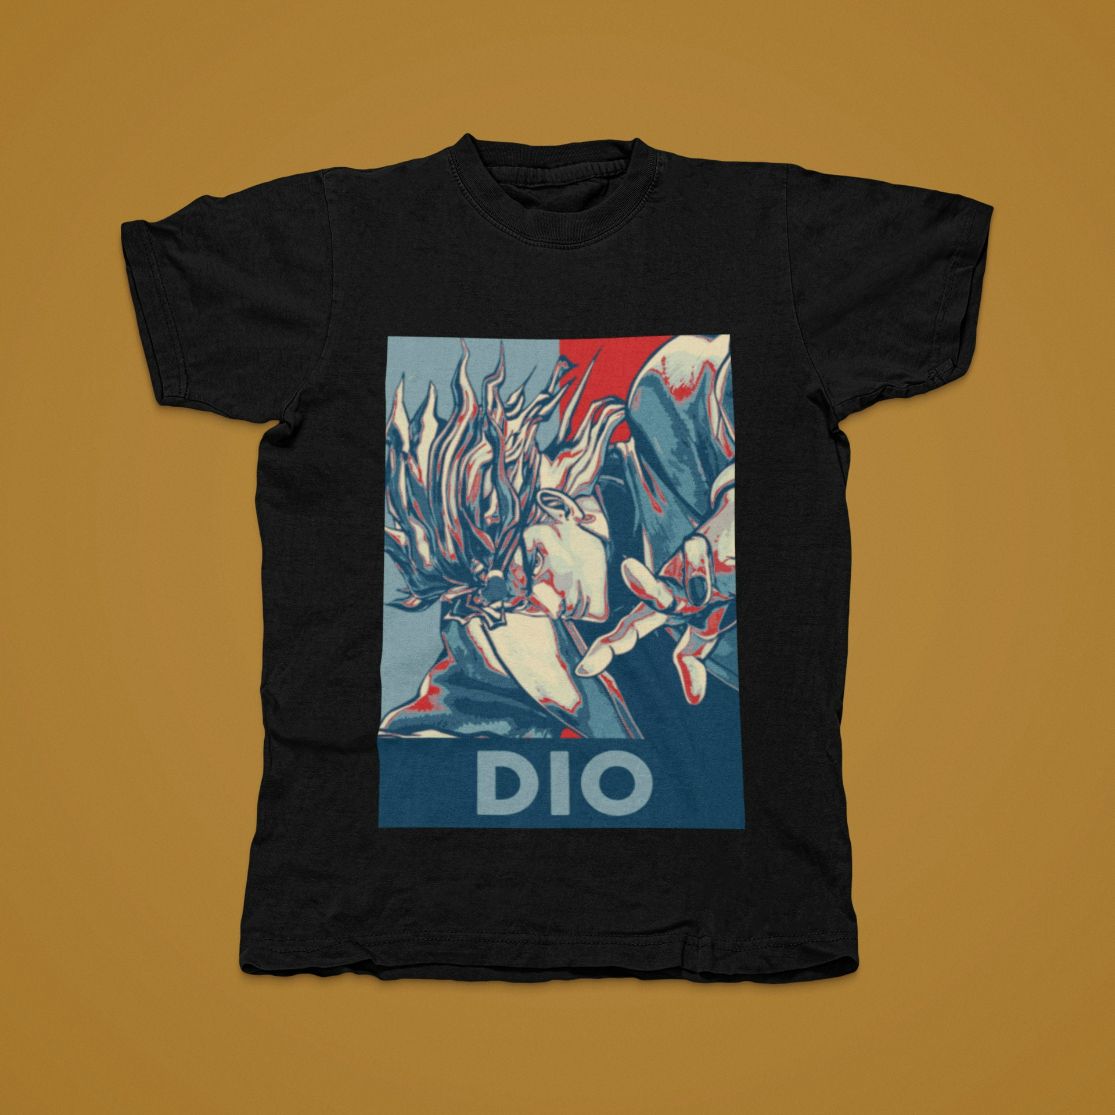 Dio Brando Jojo Bizarre Adventure Unisex T-Shirt